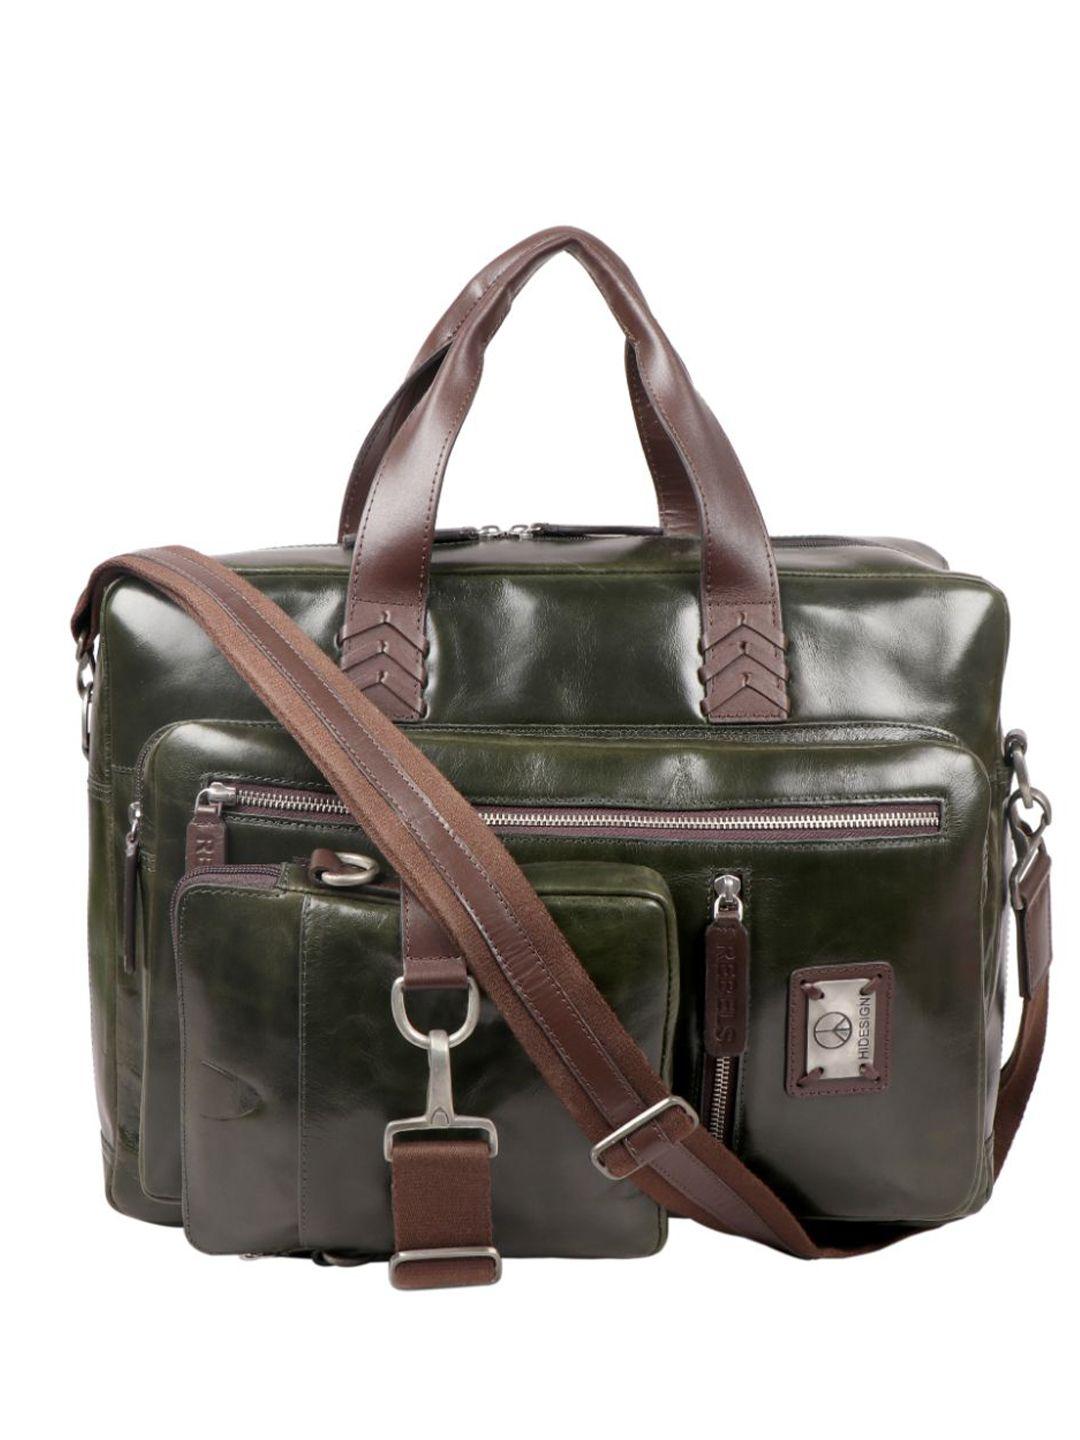 hidesign-leather-messenger-bag